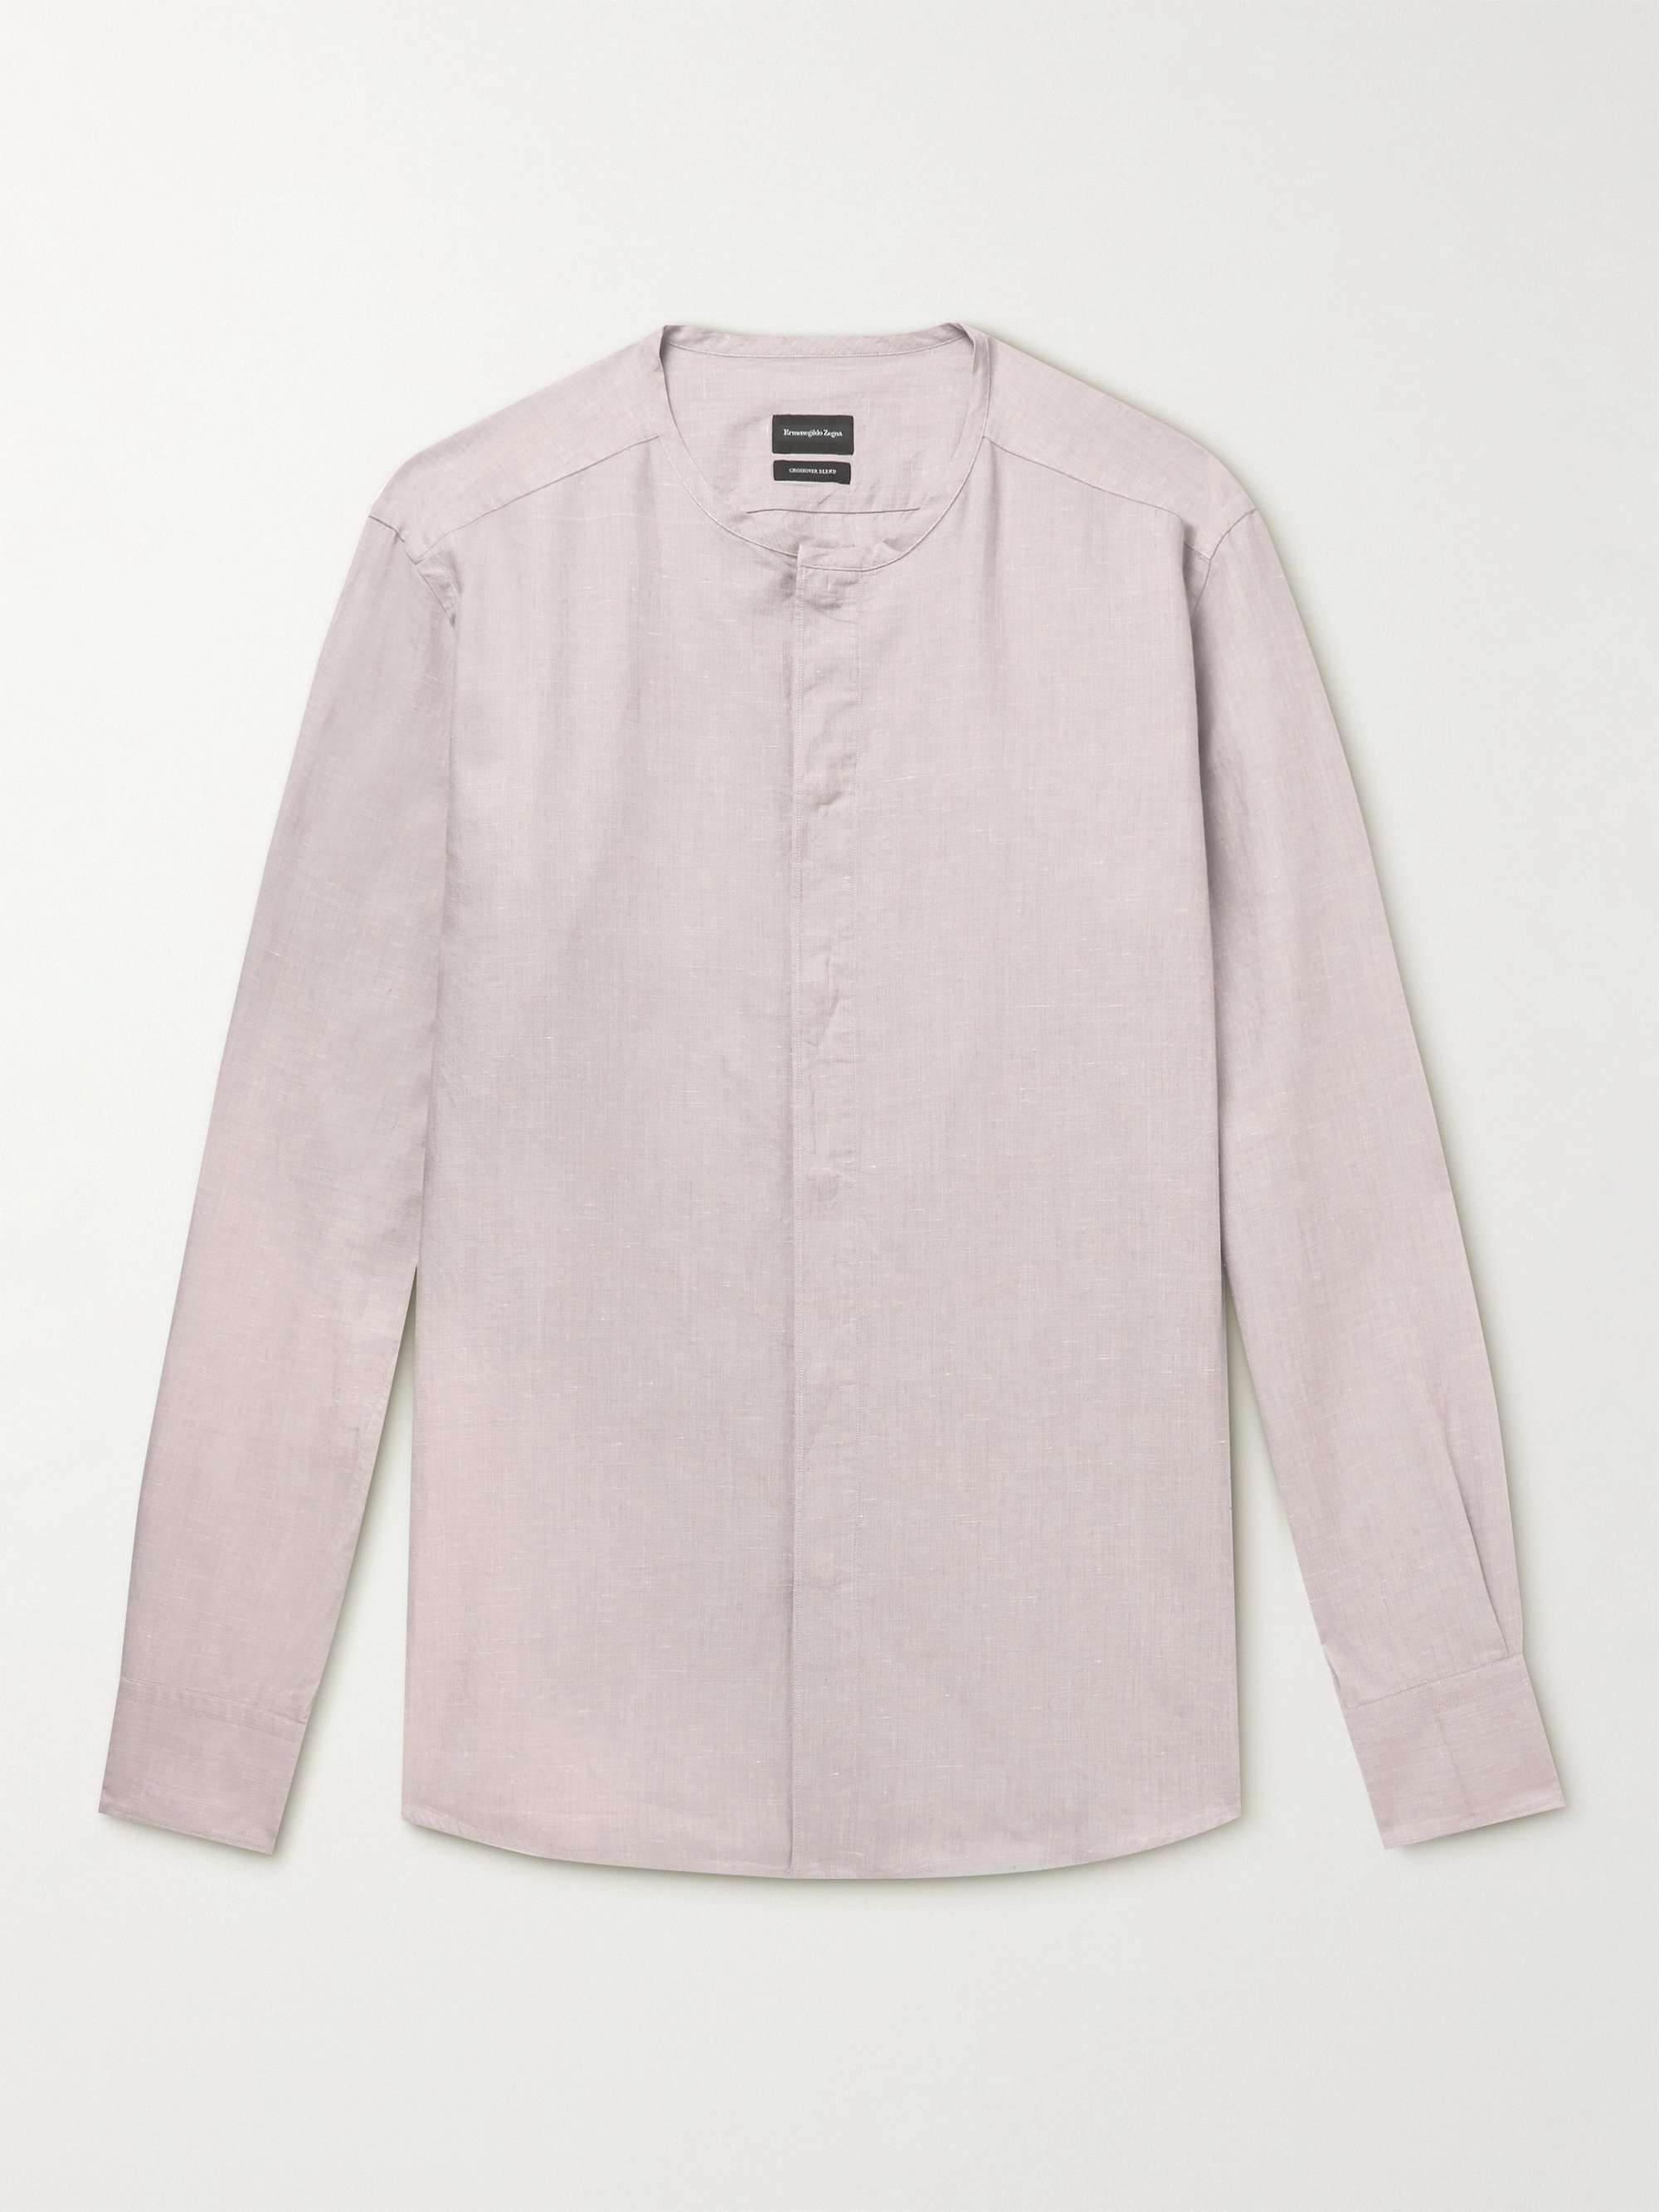 ZEGNA Collarless Cotton, Linen and Silk-Blend Shirt